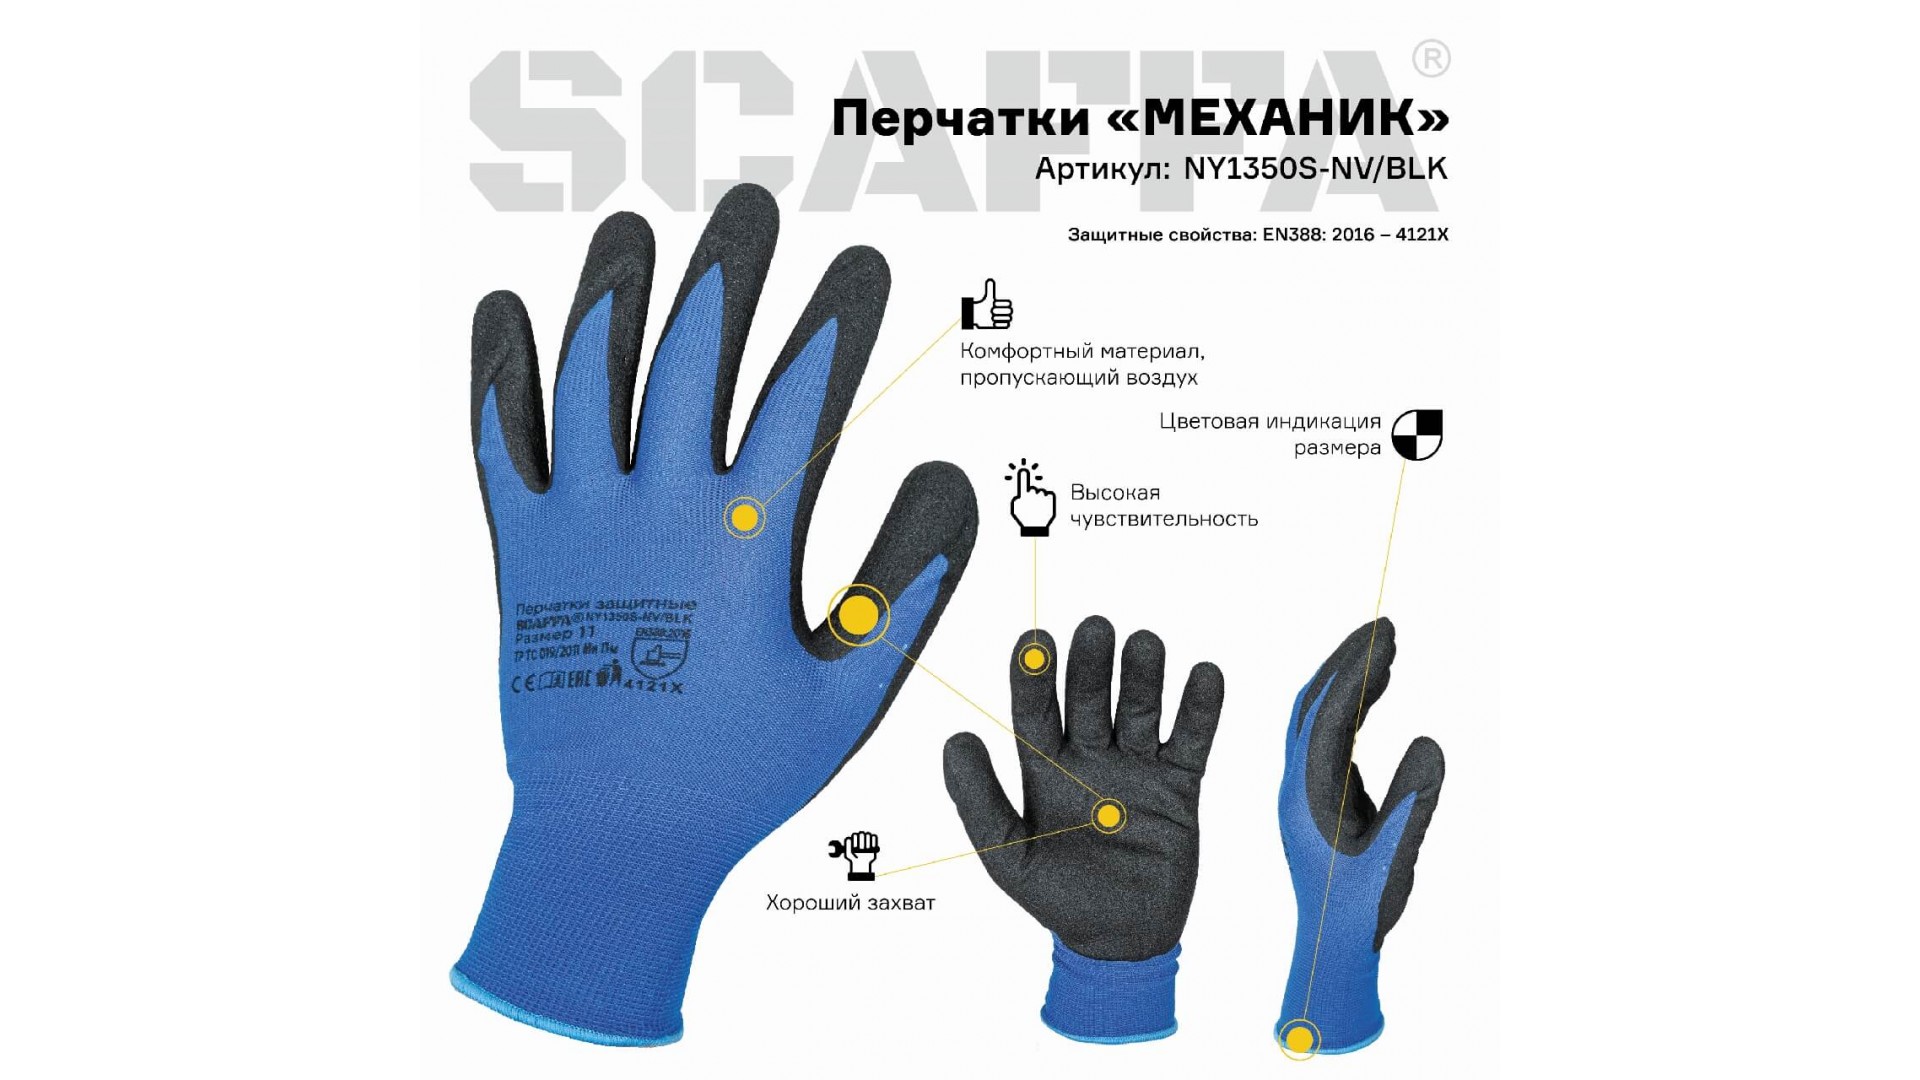 Перчатки МЕХАНИК для защиты от ОПЗ